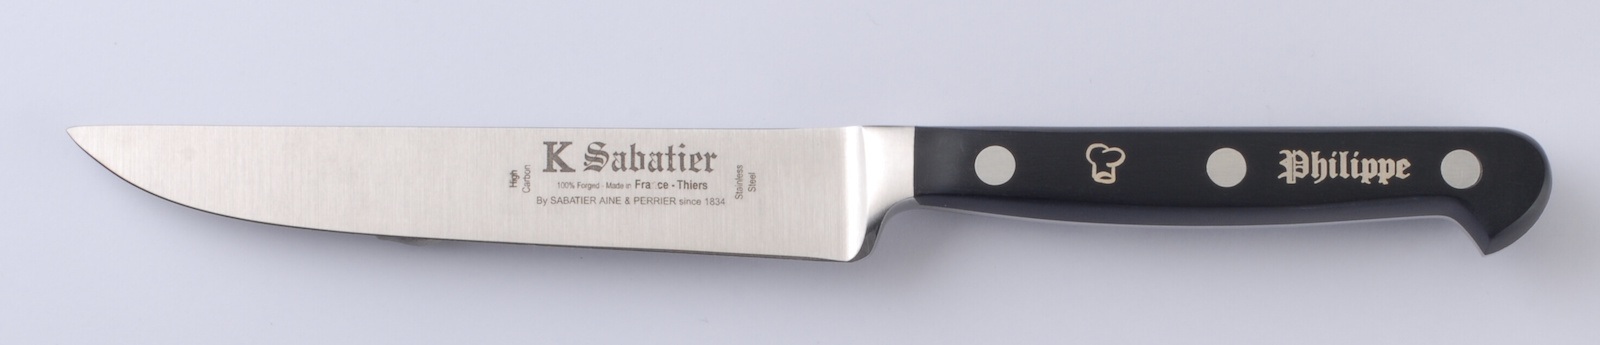 personnalisation manche d'une couteau Sabatier K